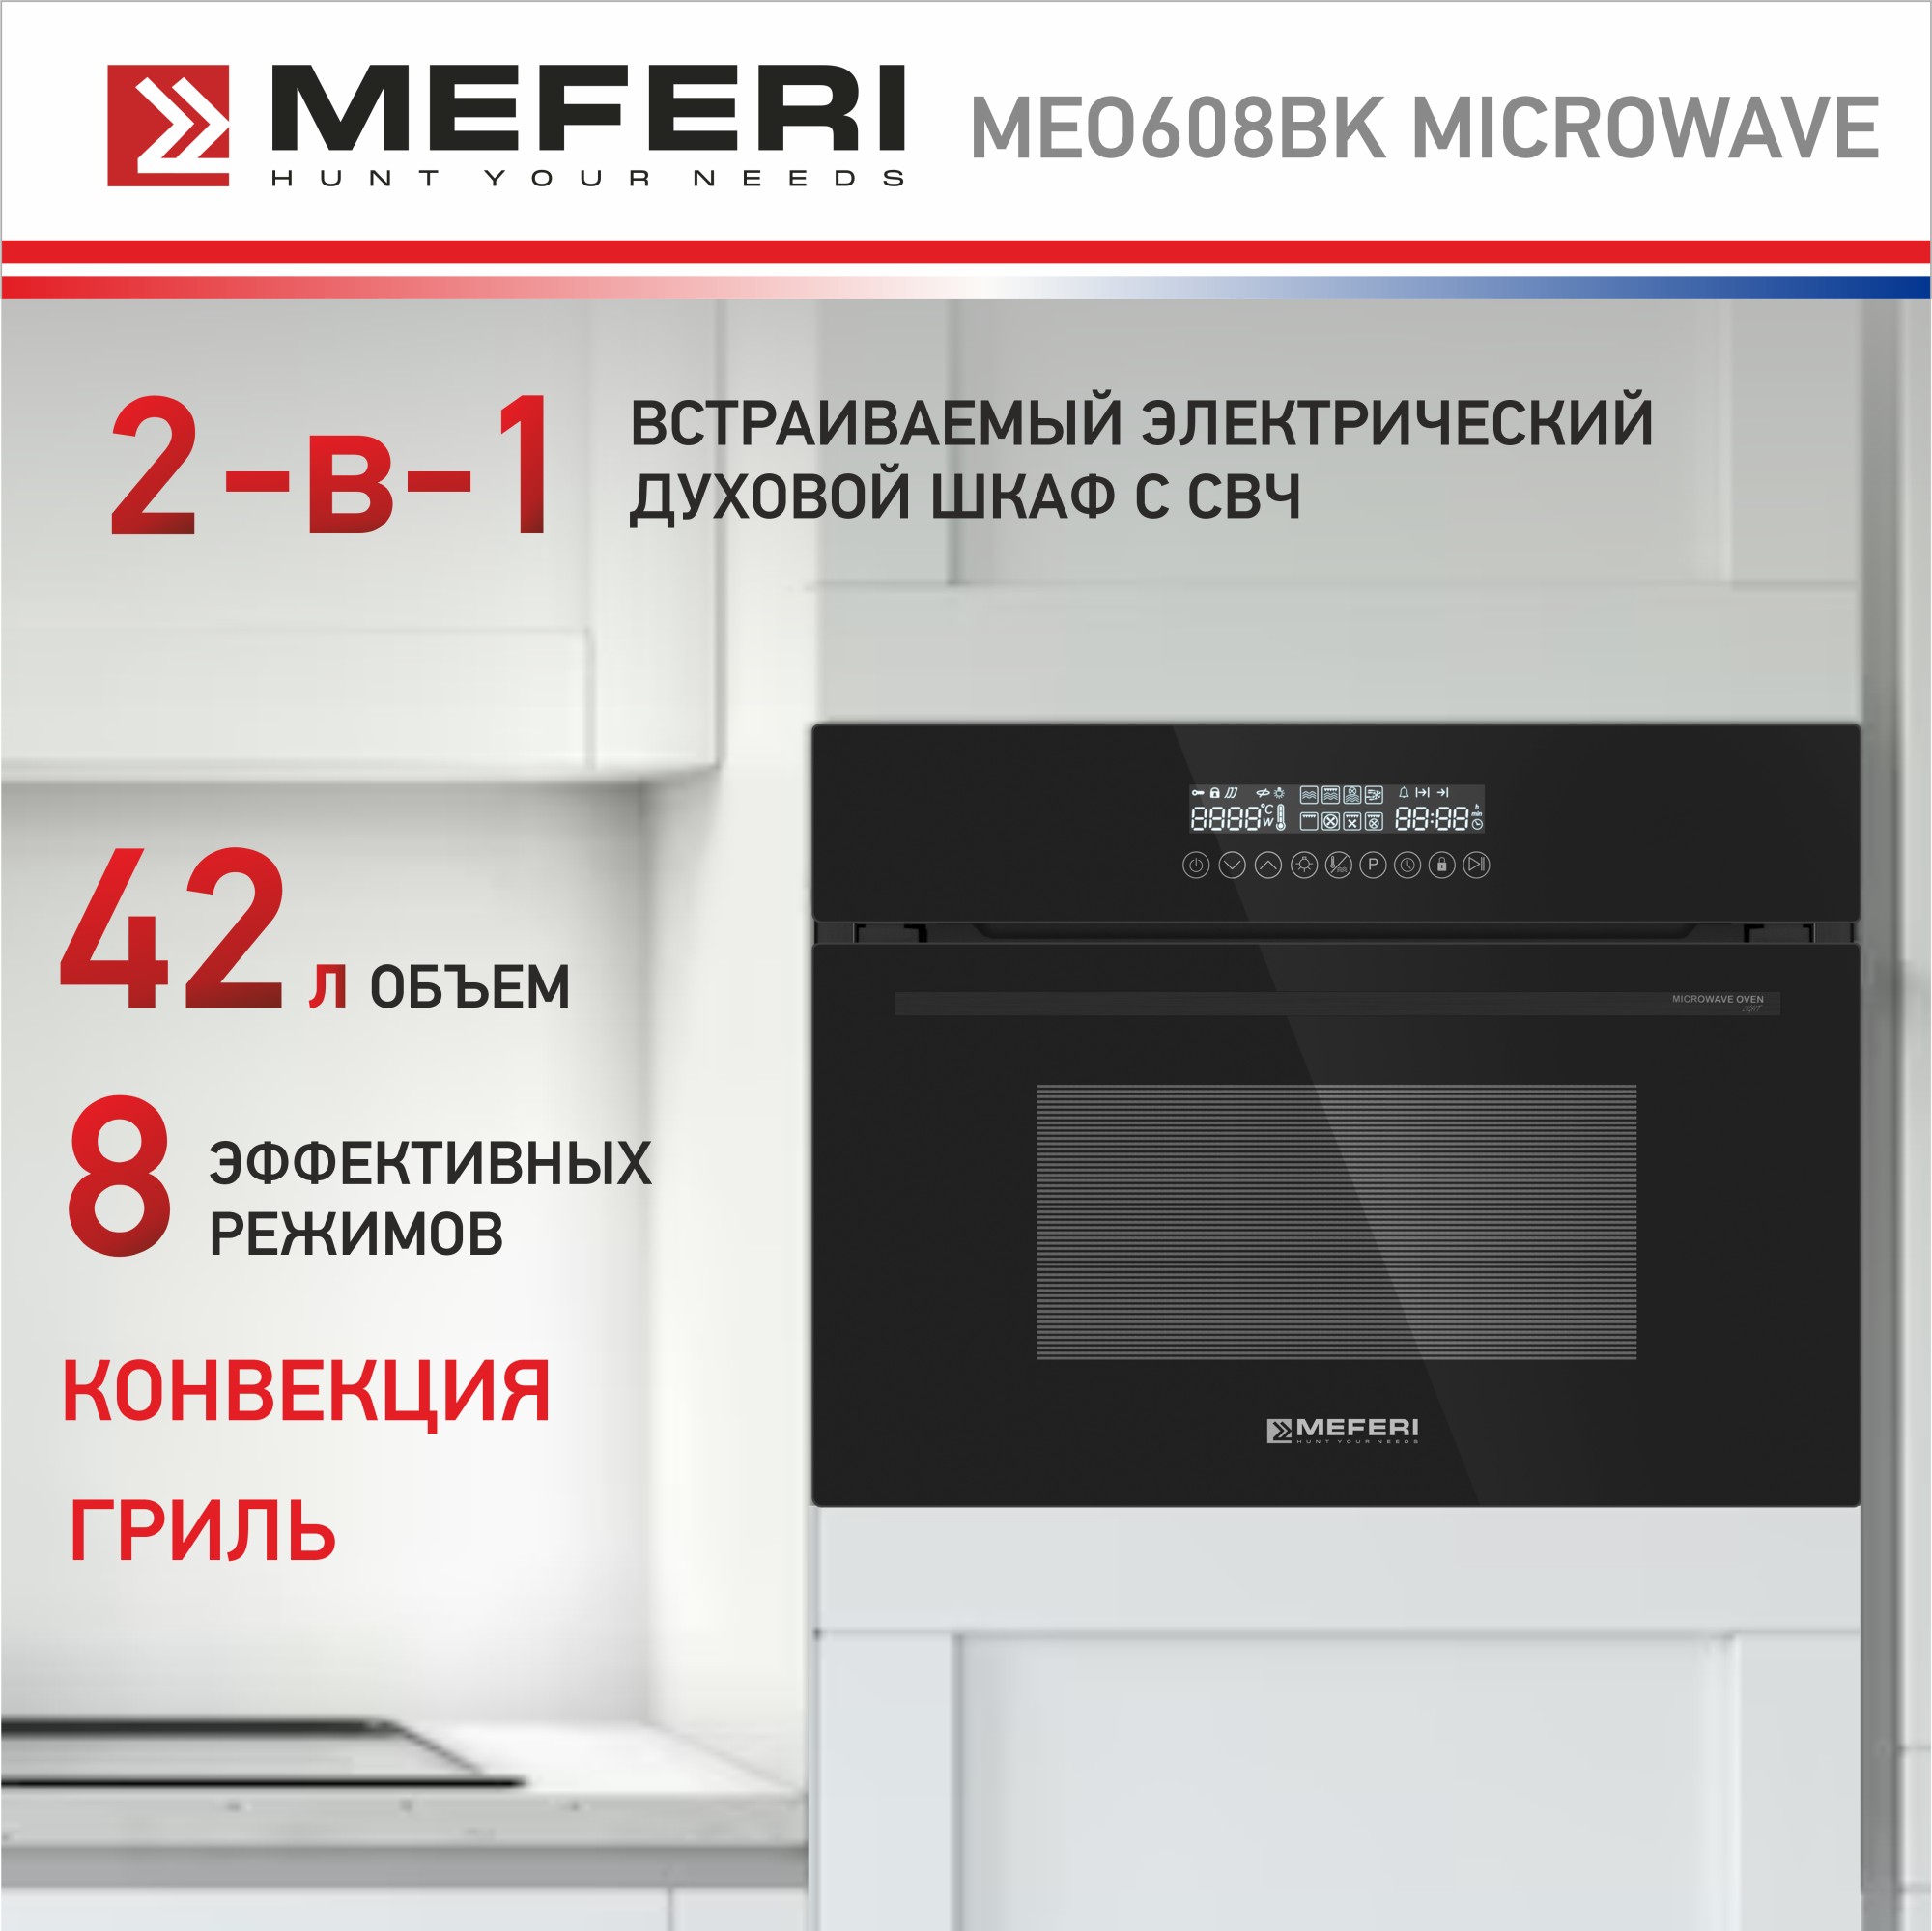 Электрический духовой шкаф MEFERI MEO608BK MICROWAVE